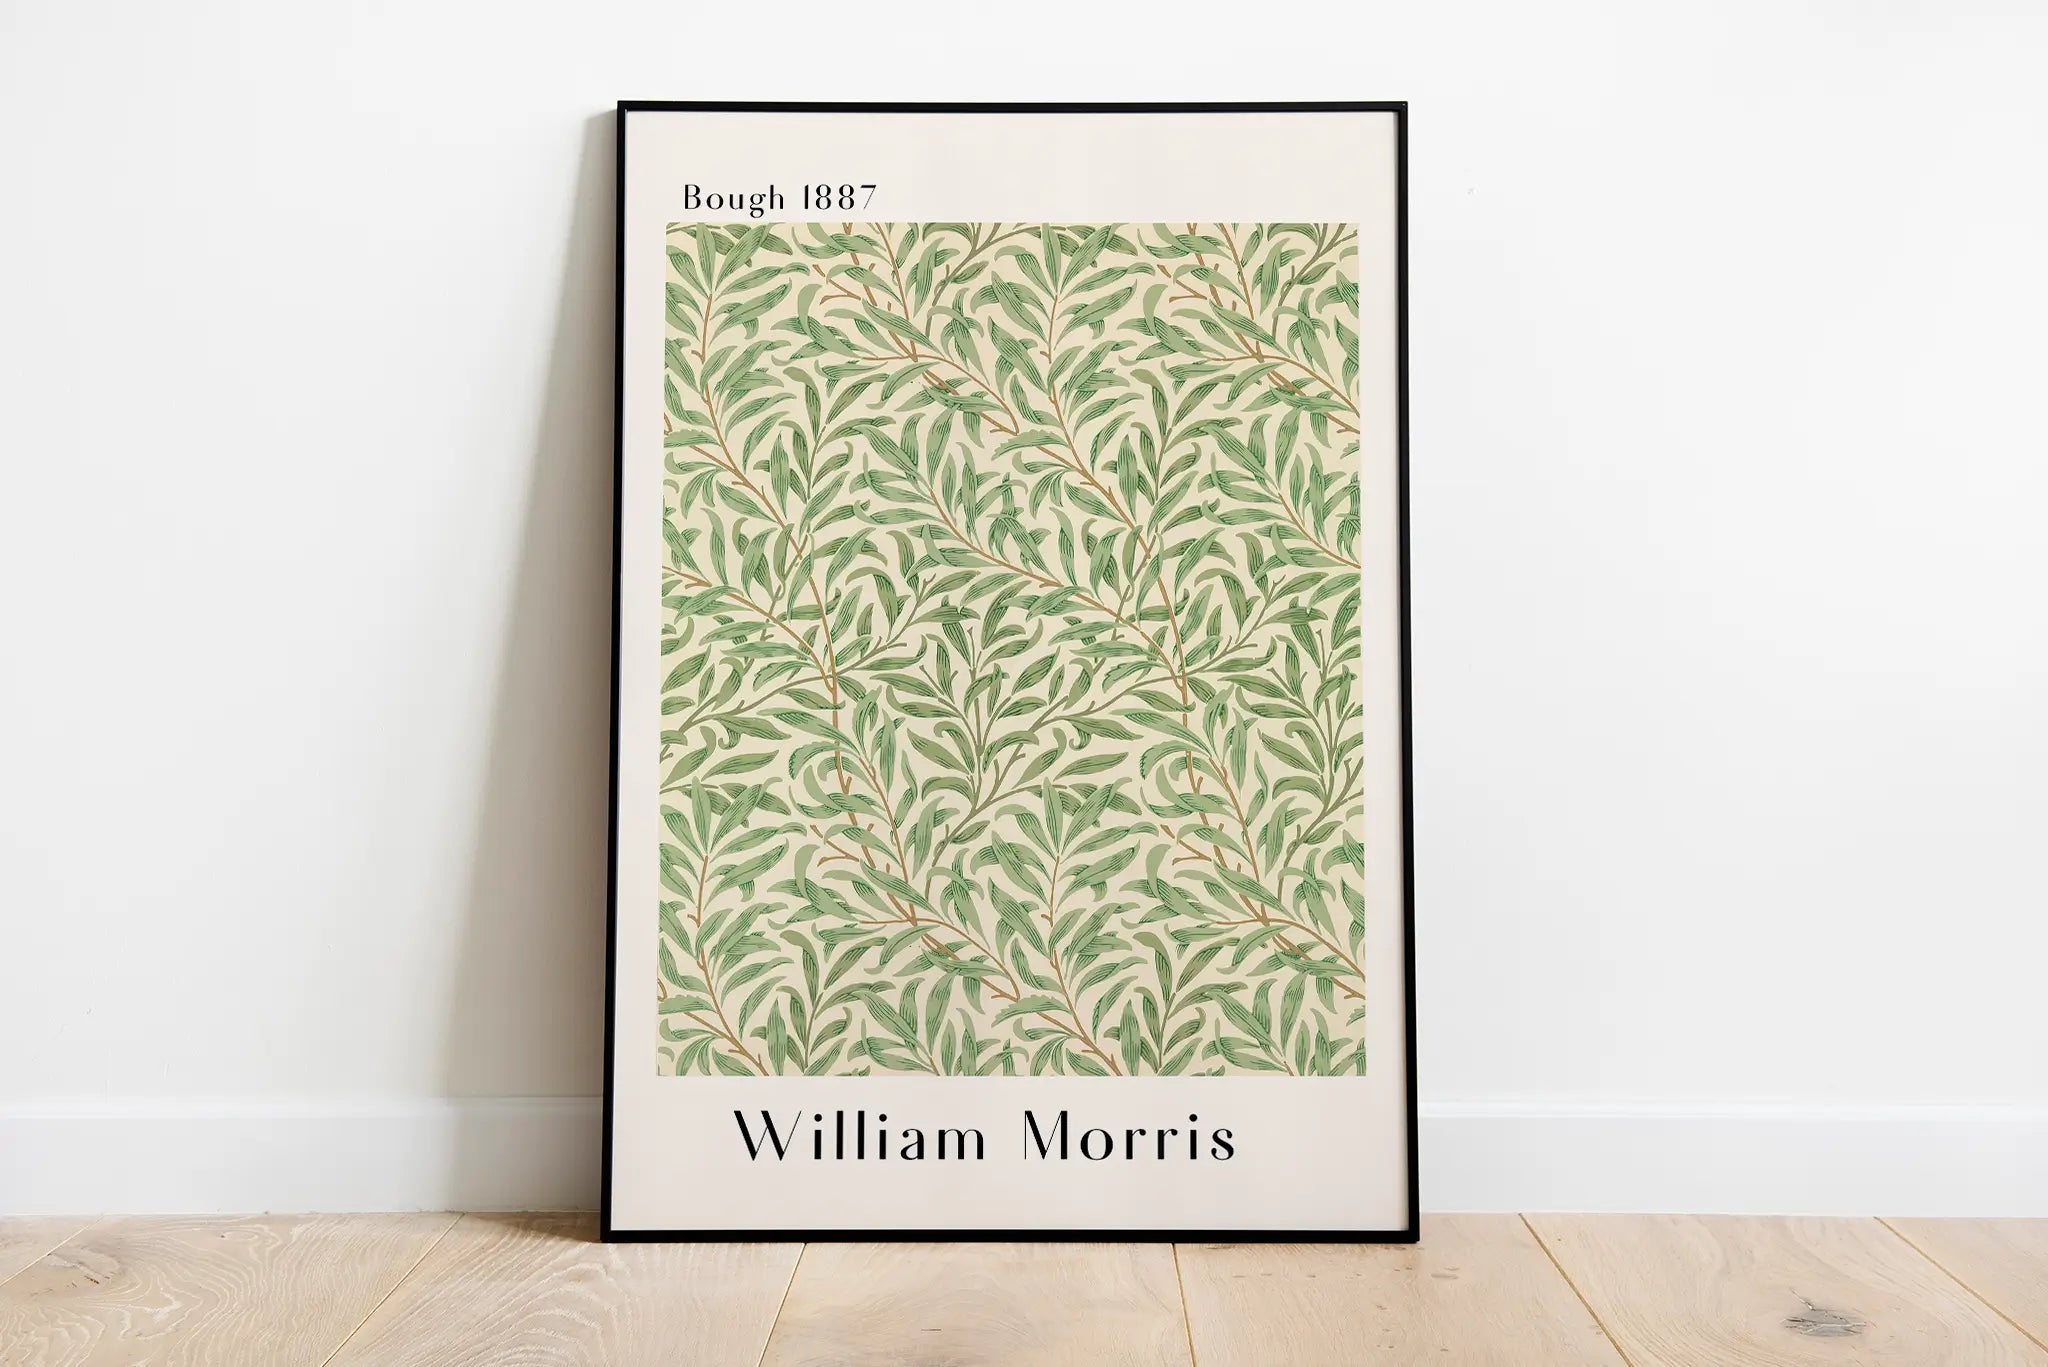 William Morris Bough